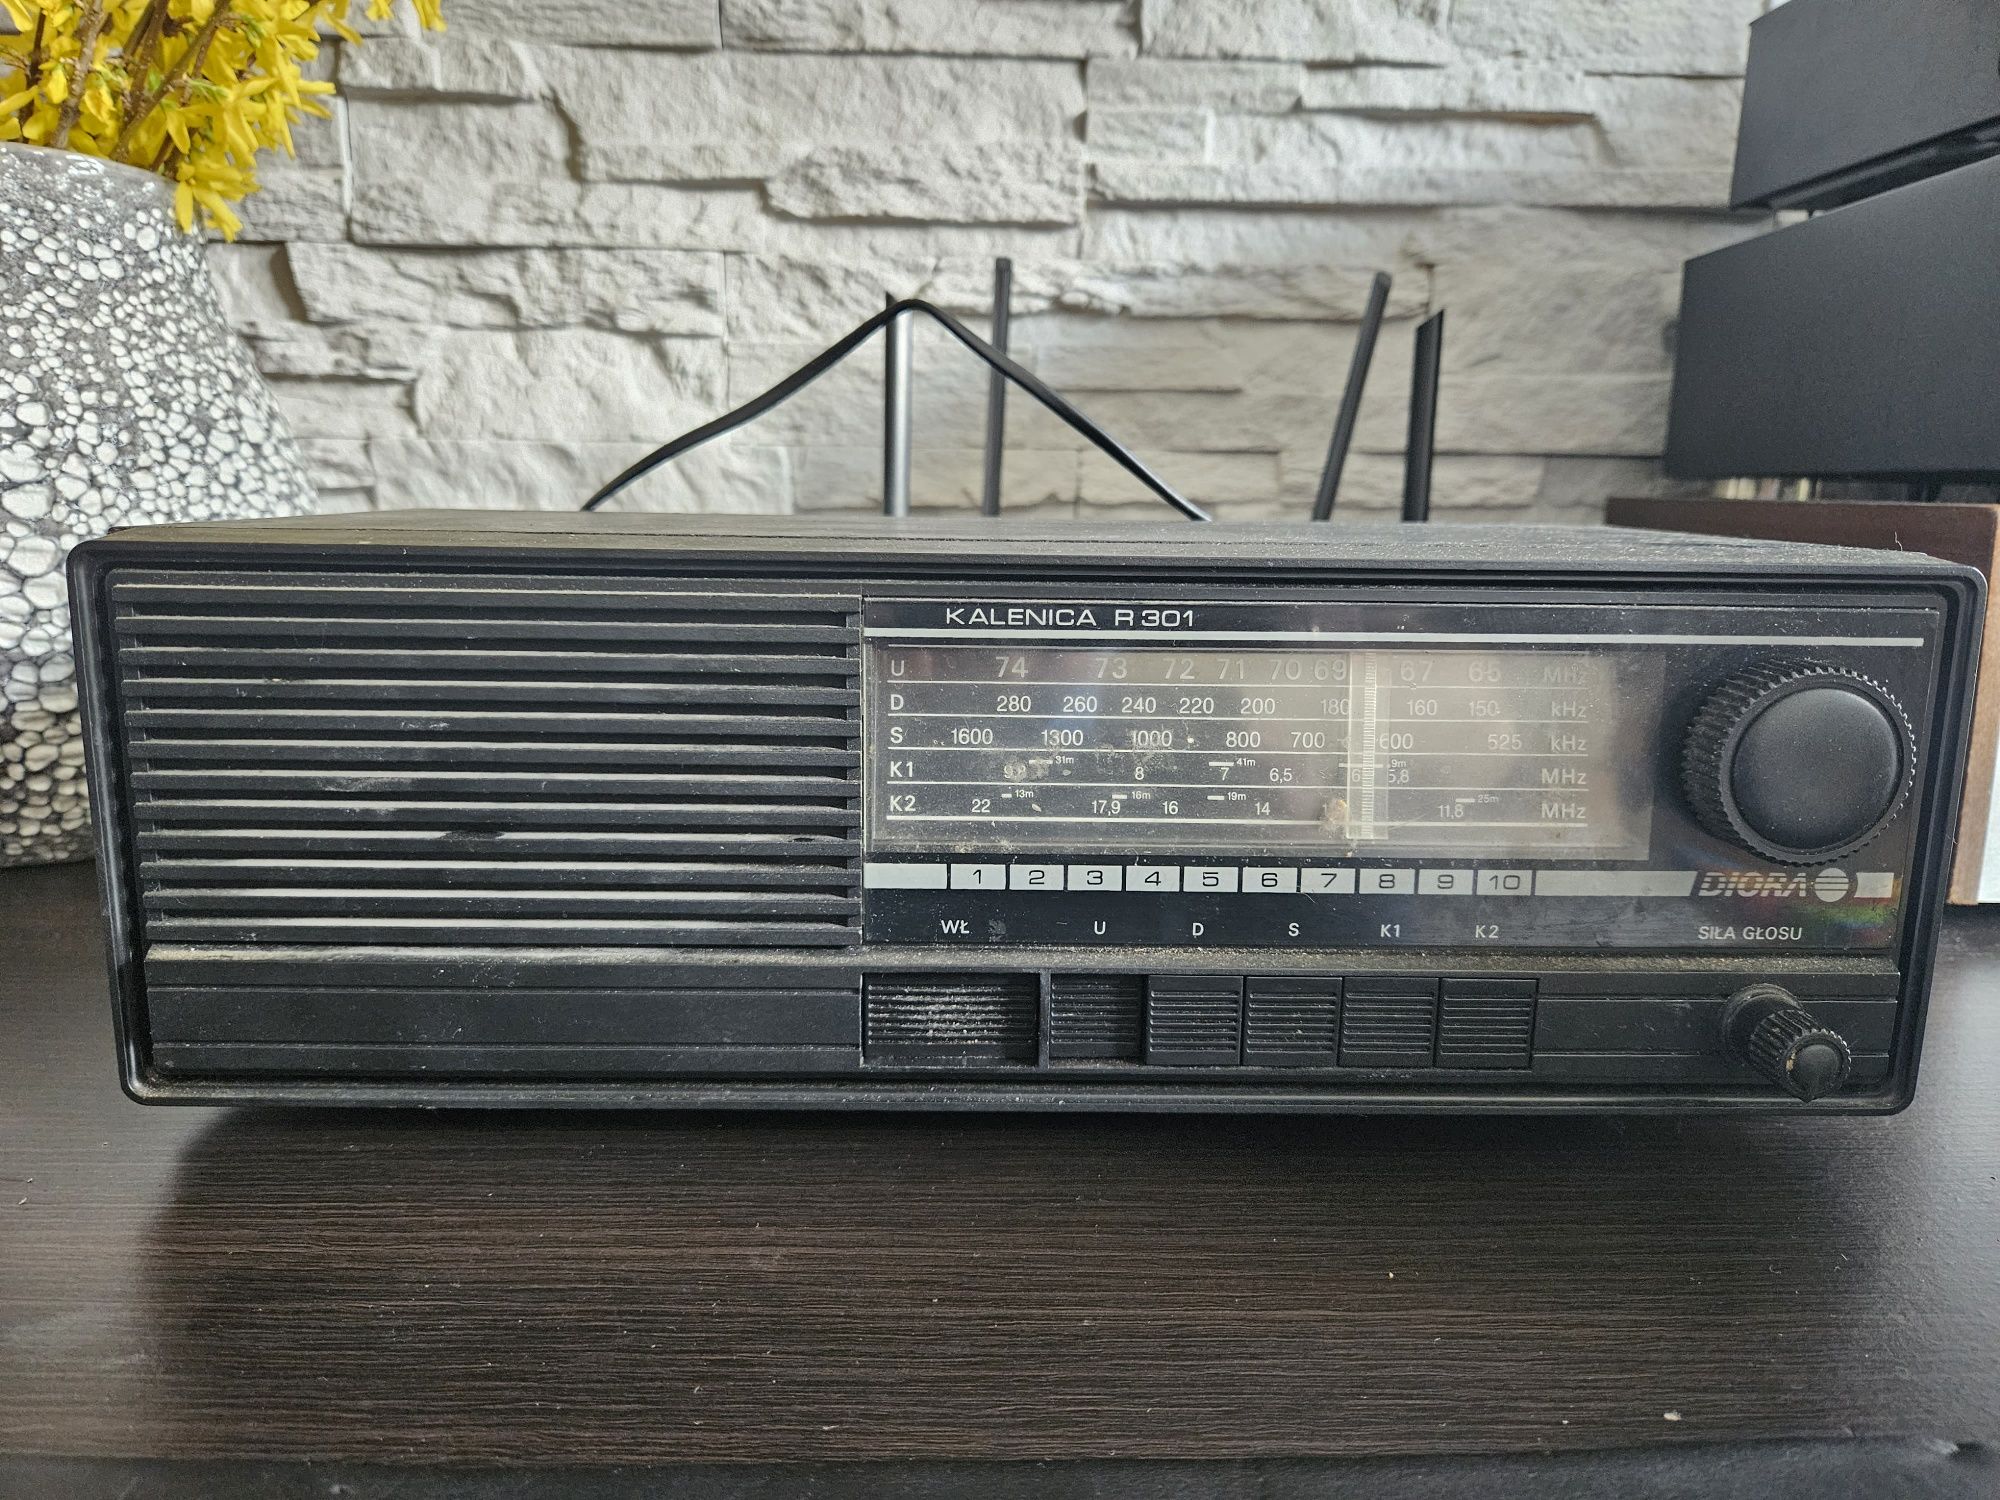 Stare radia na chodzie Diora śnieżka kalenica ślązak